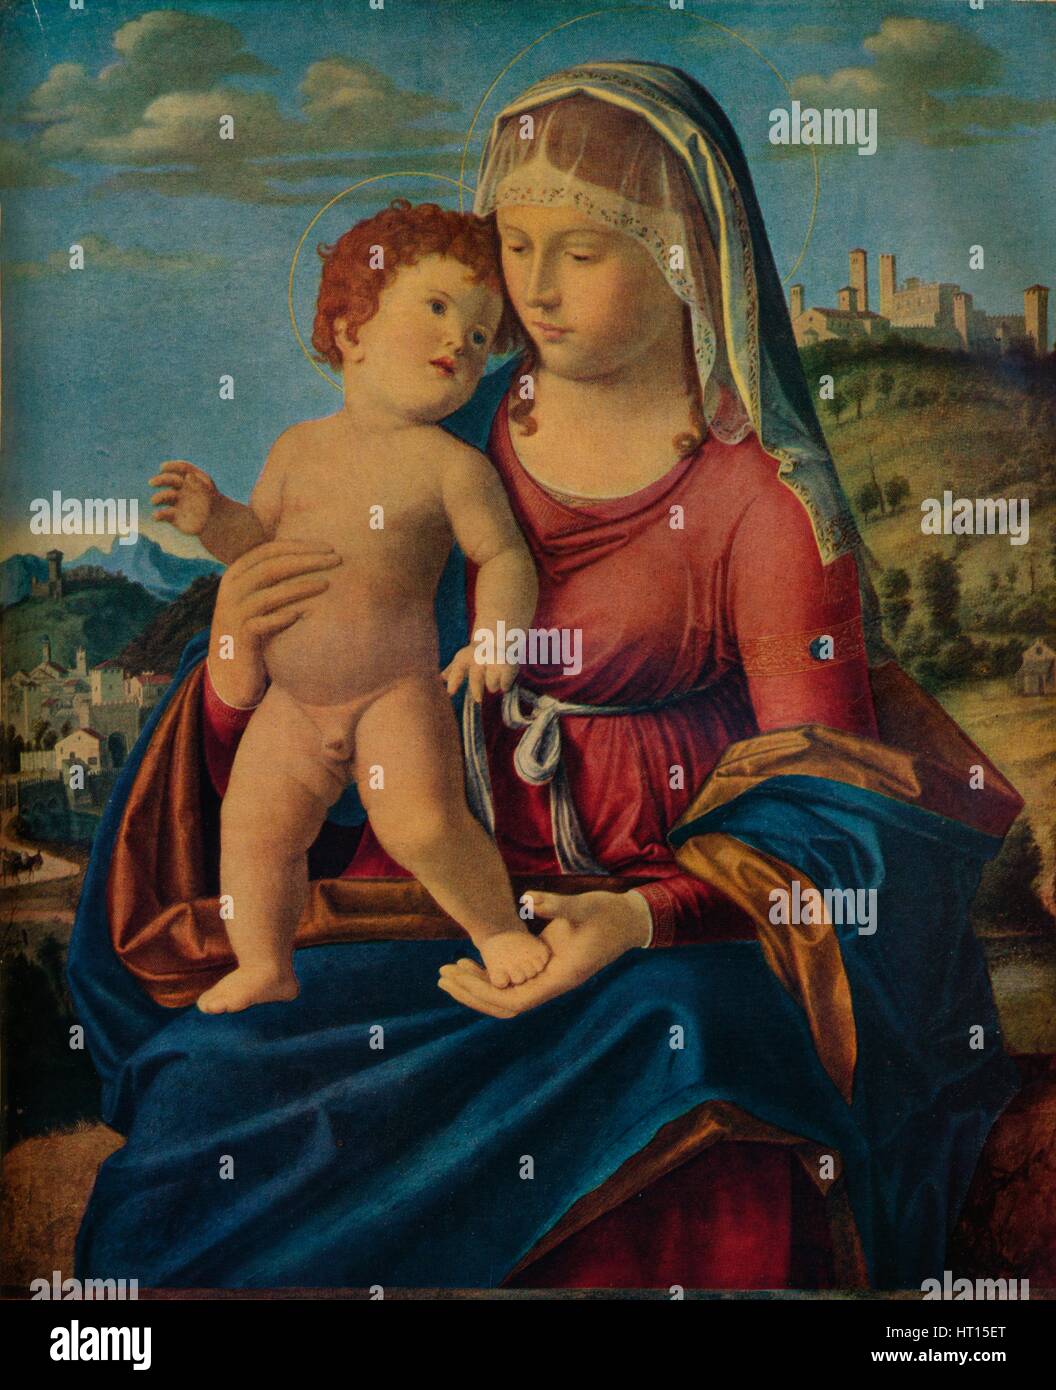 'The Virgin and Child', c1496-9. Creator: Giovanni Battista Cima da Conegliano. Stock Photo